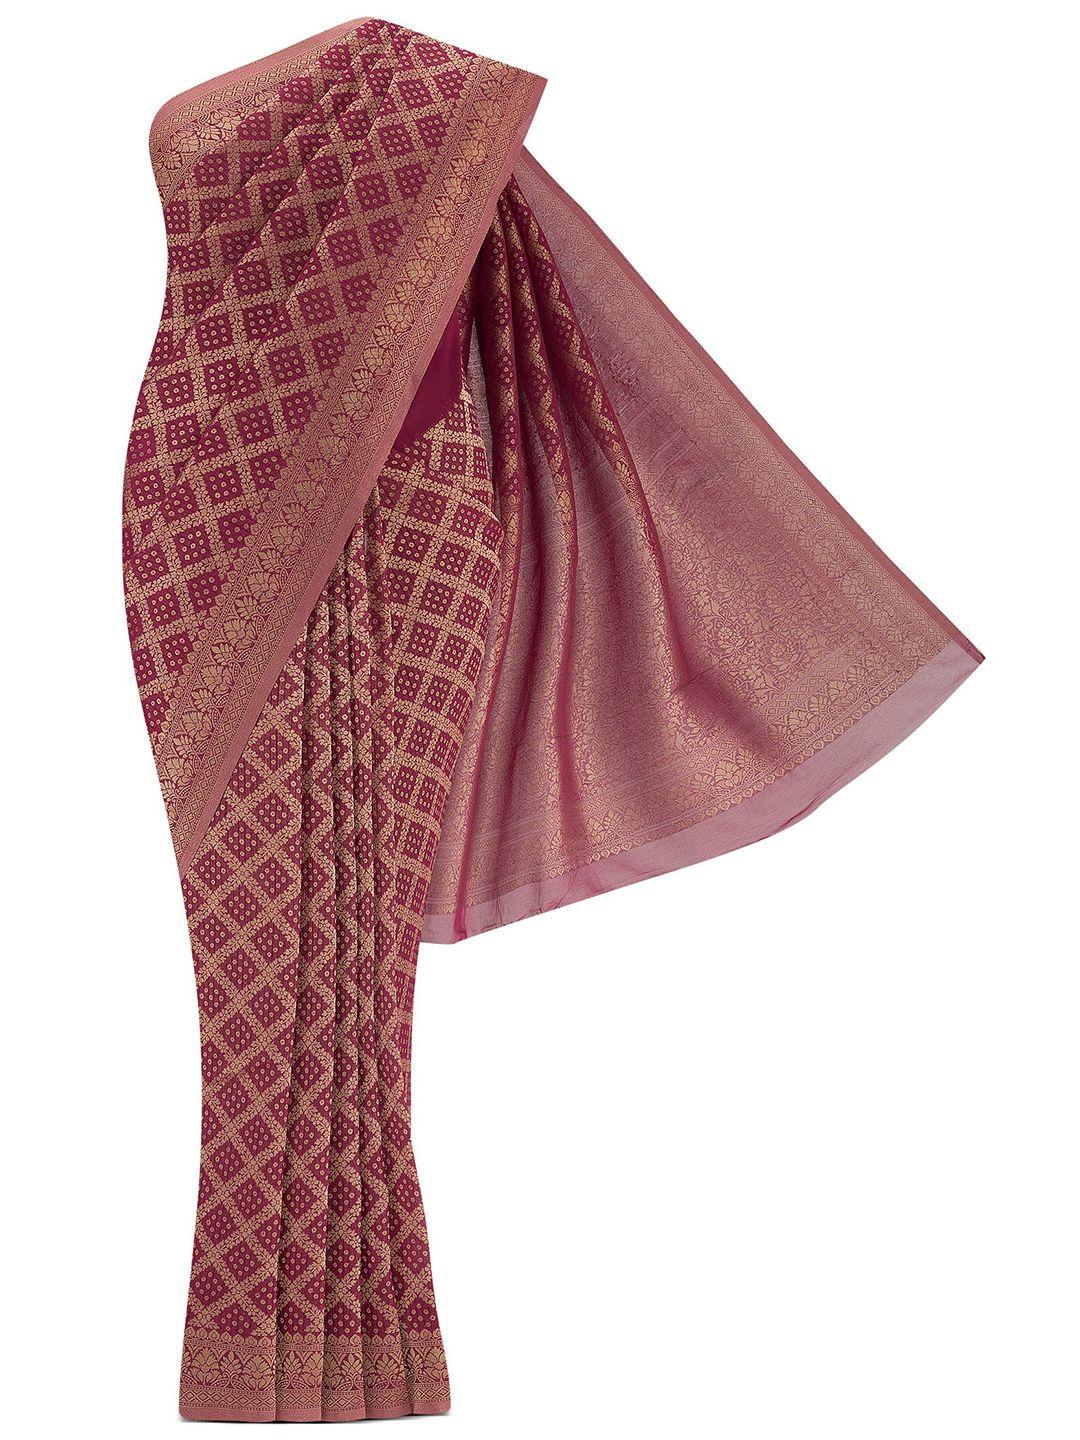 nalli woven design zari poly georgette mysore silk saree